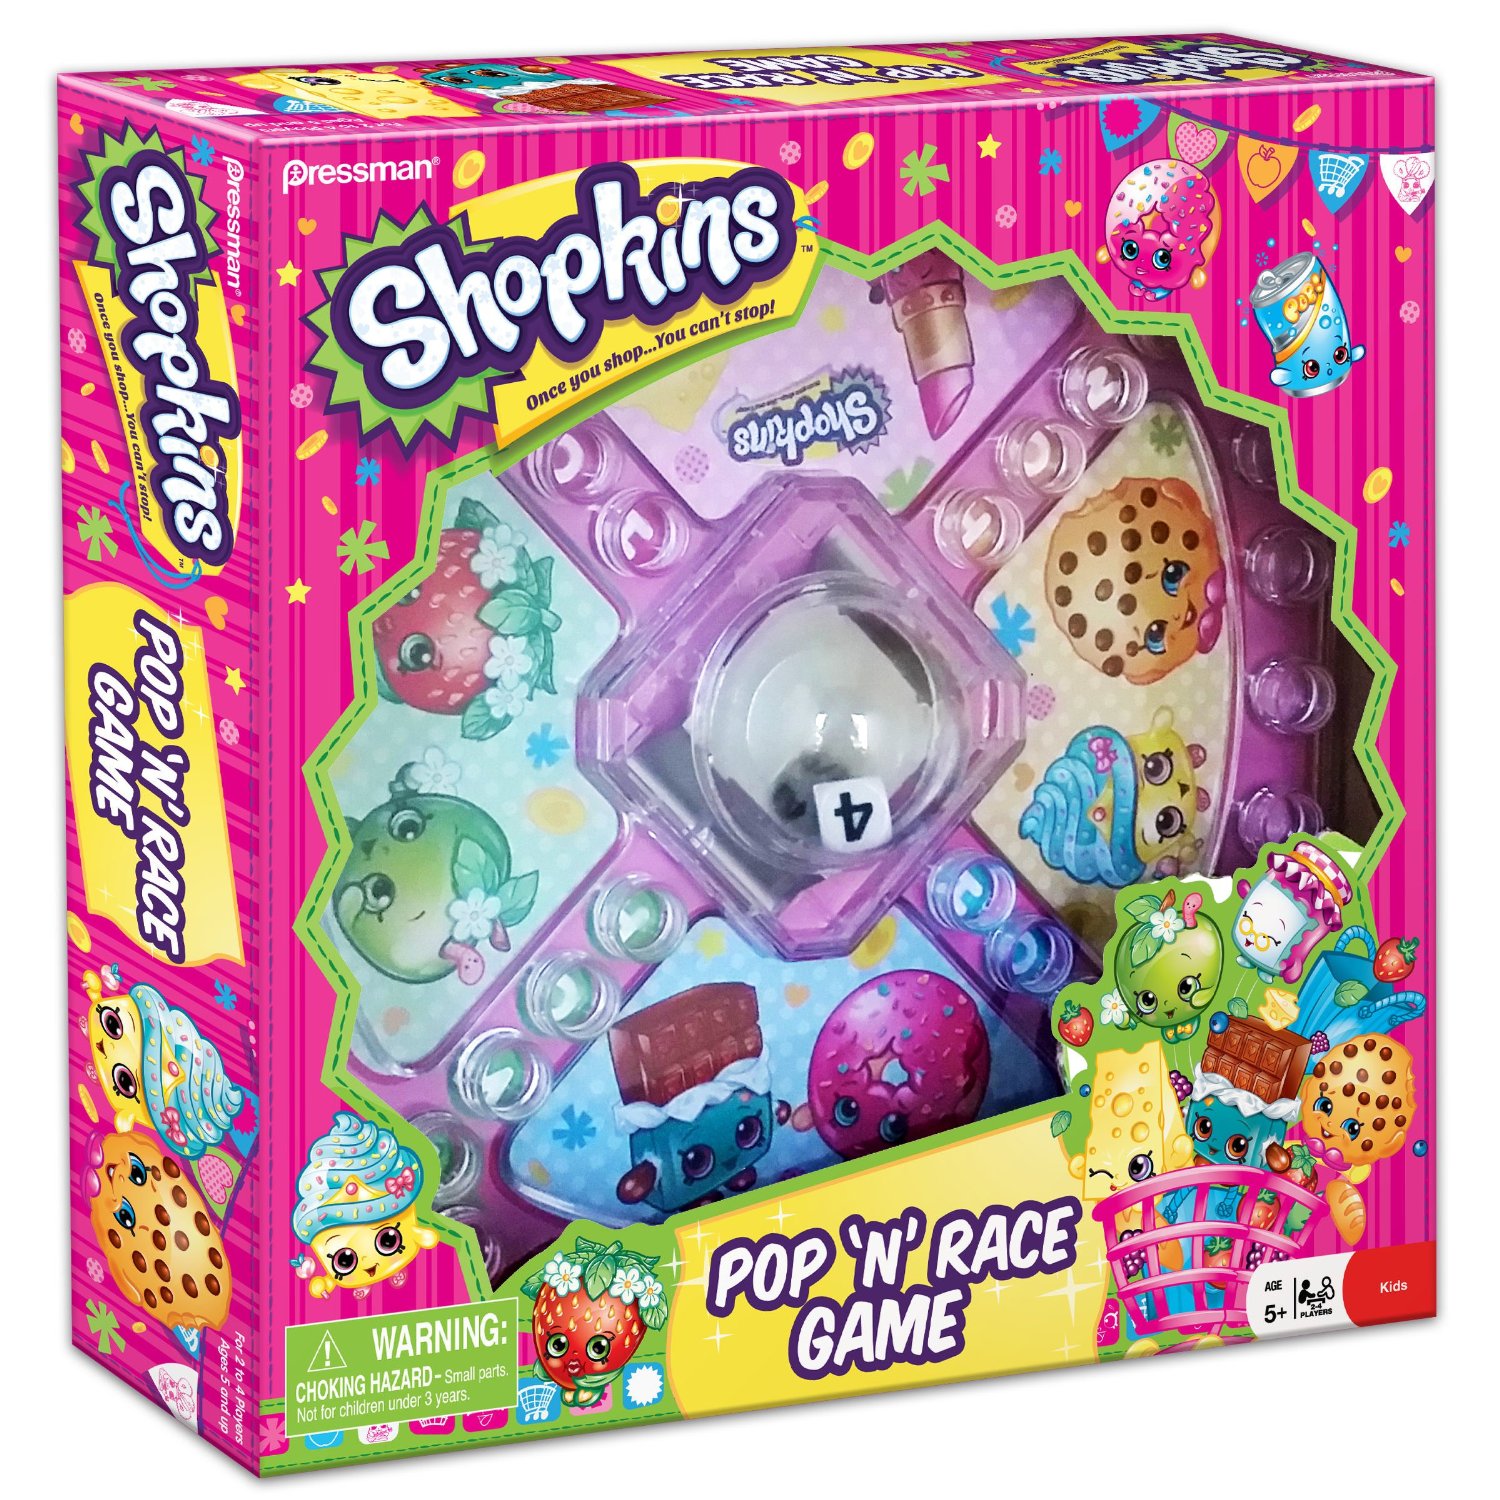 Shopkins Pop ‘N’ Race Game – Just $7.76! So much fun!